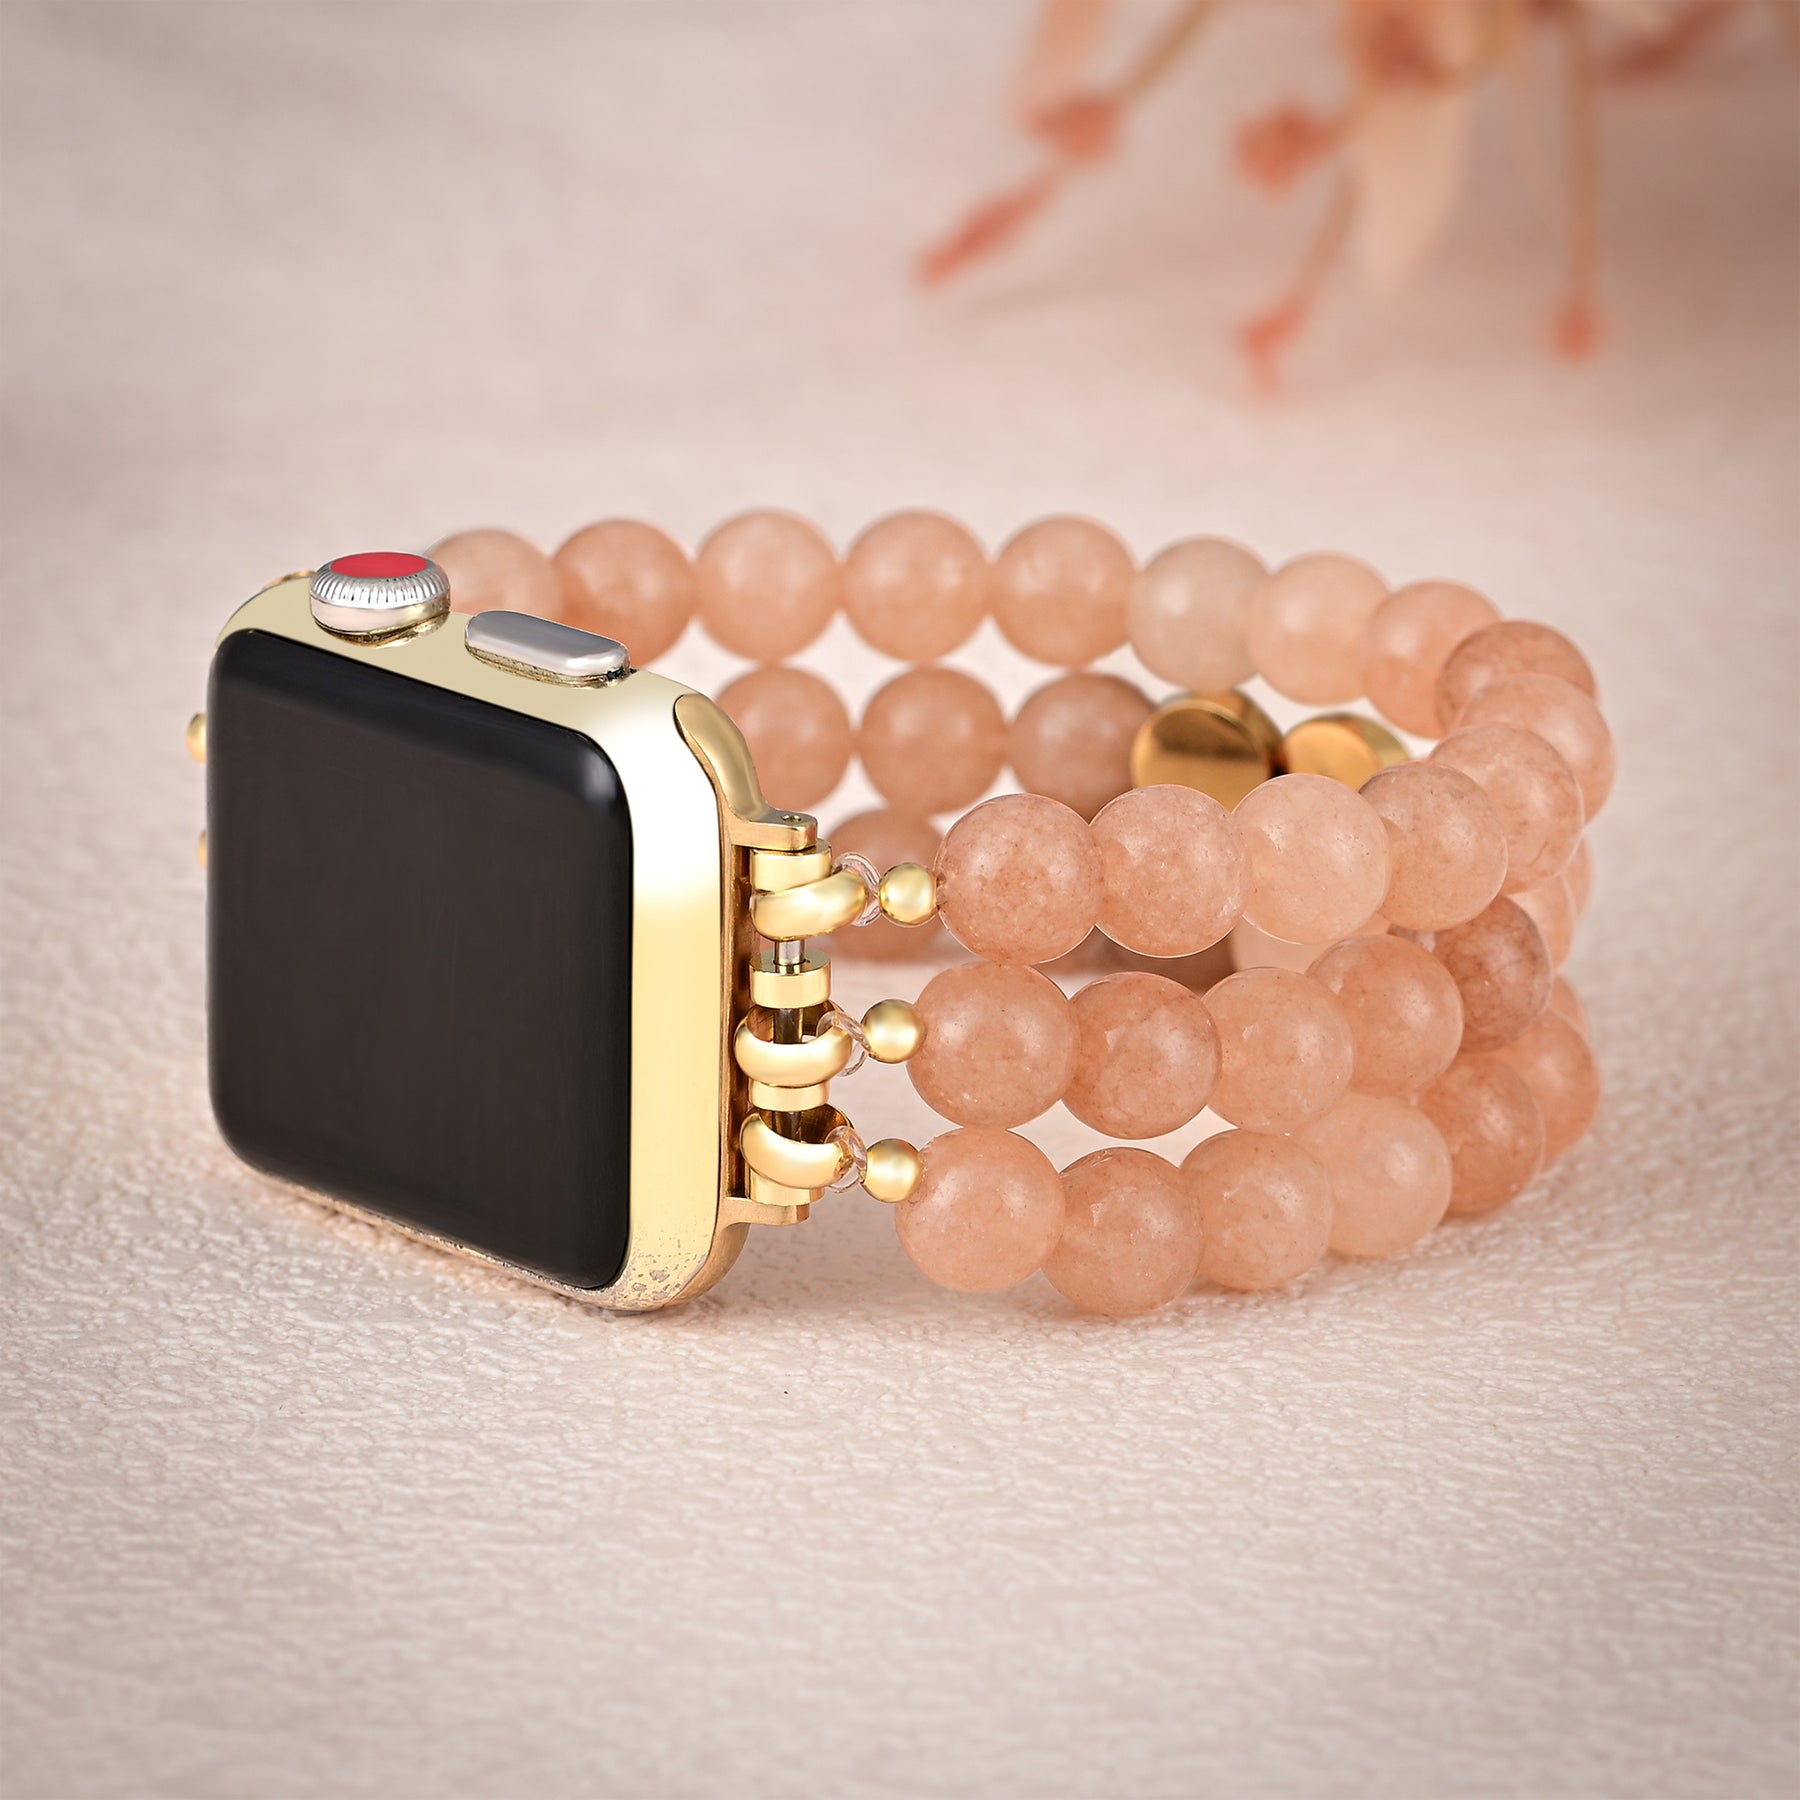 Bracelet Apple Watch Inspiration Joy Sunstone